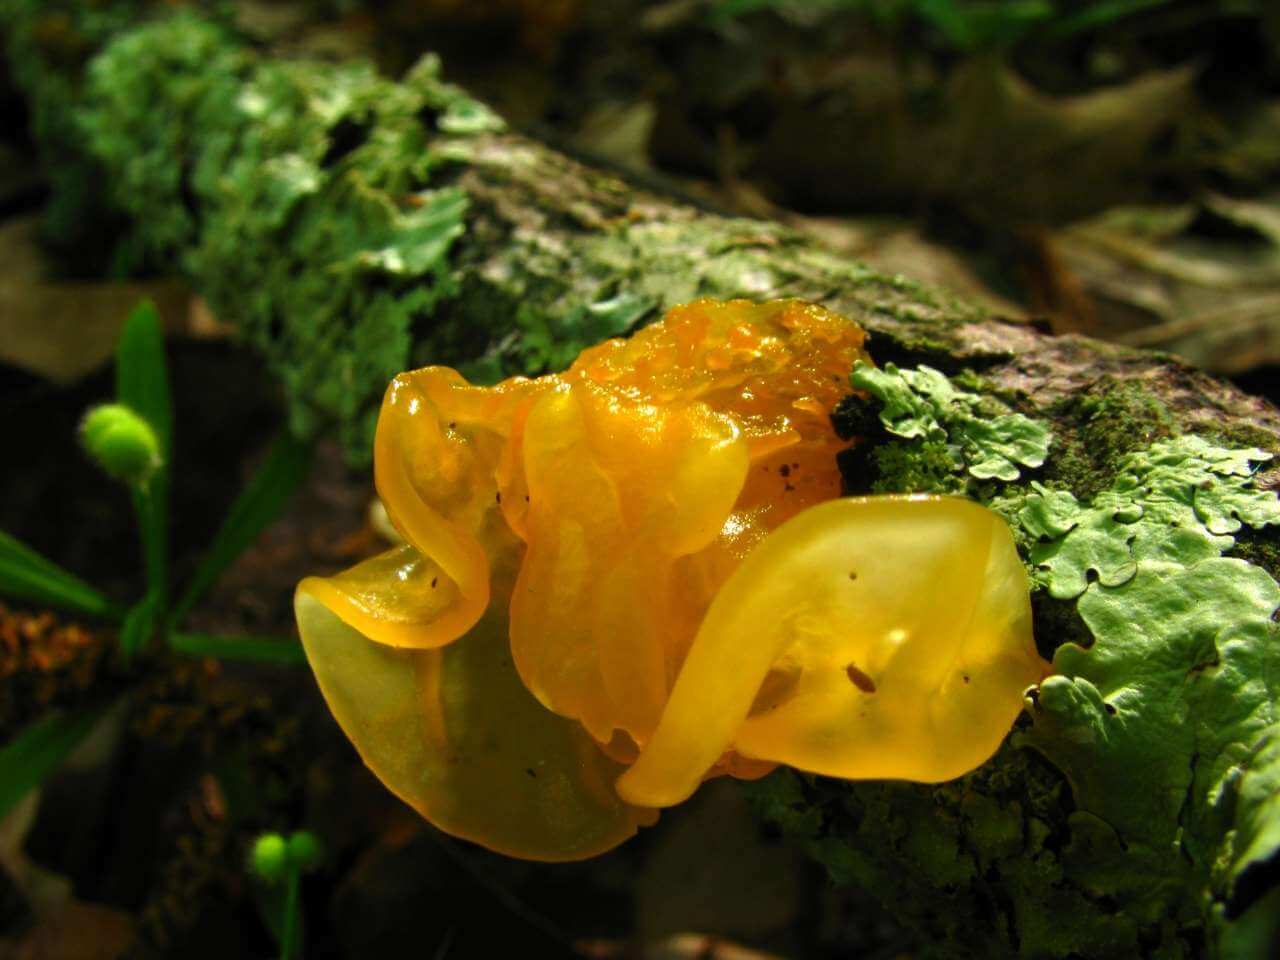 Съедобные грибы-желе появились в лесах Подмосковья